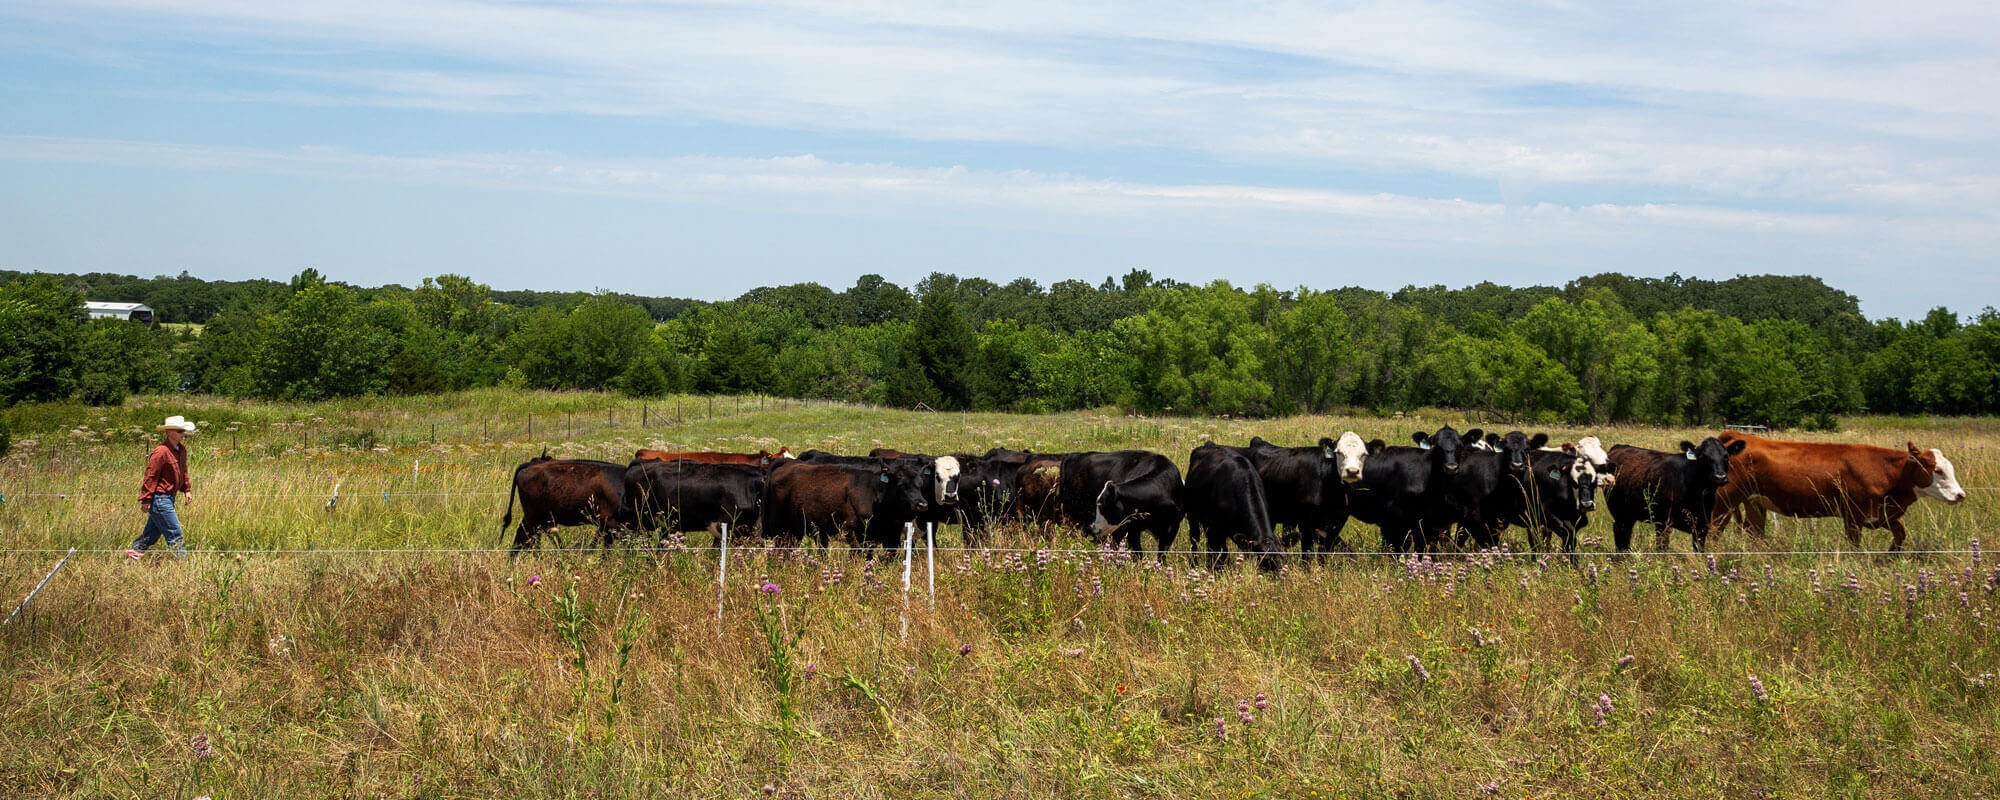 牛群高密度放牧多线栅栏